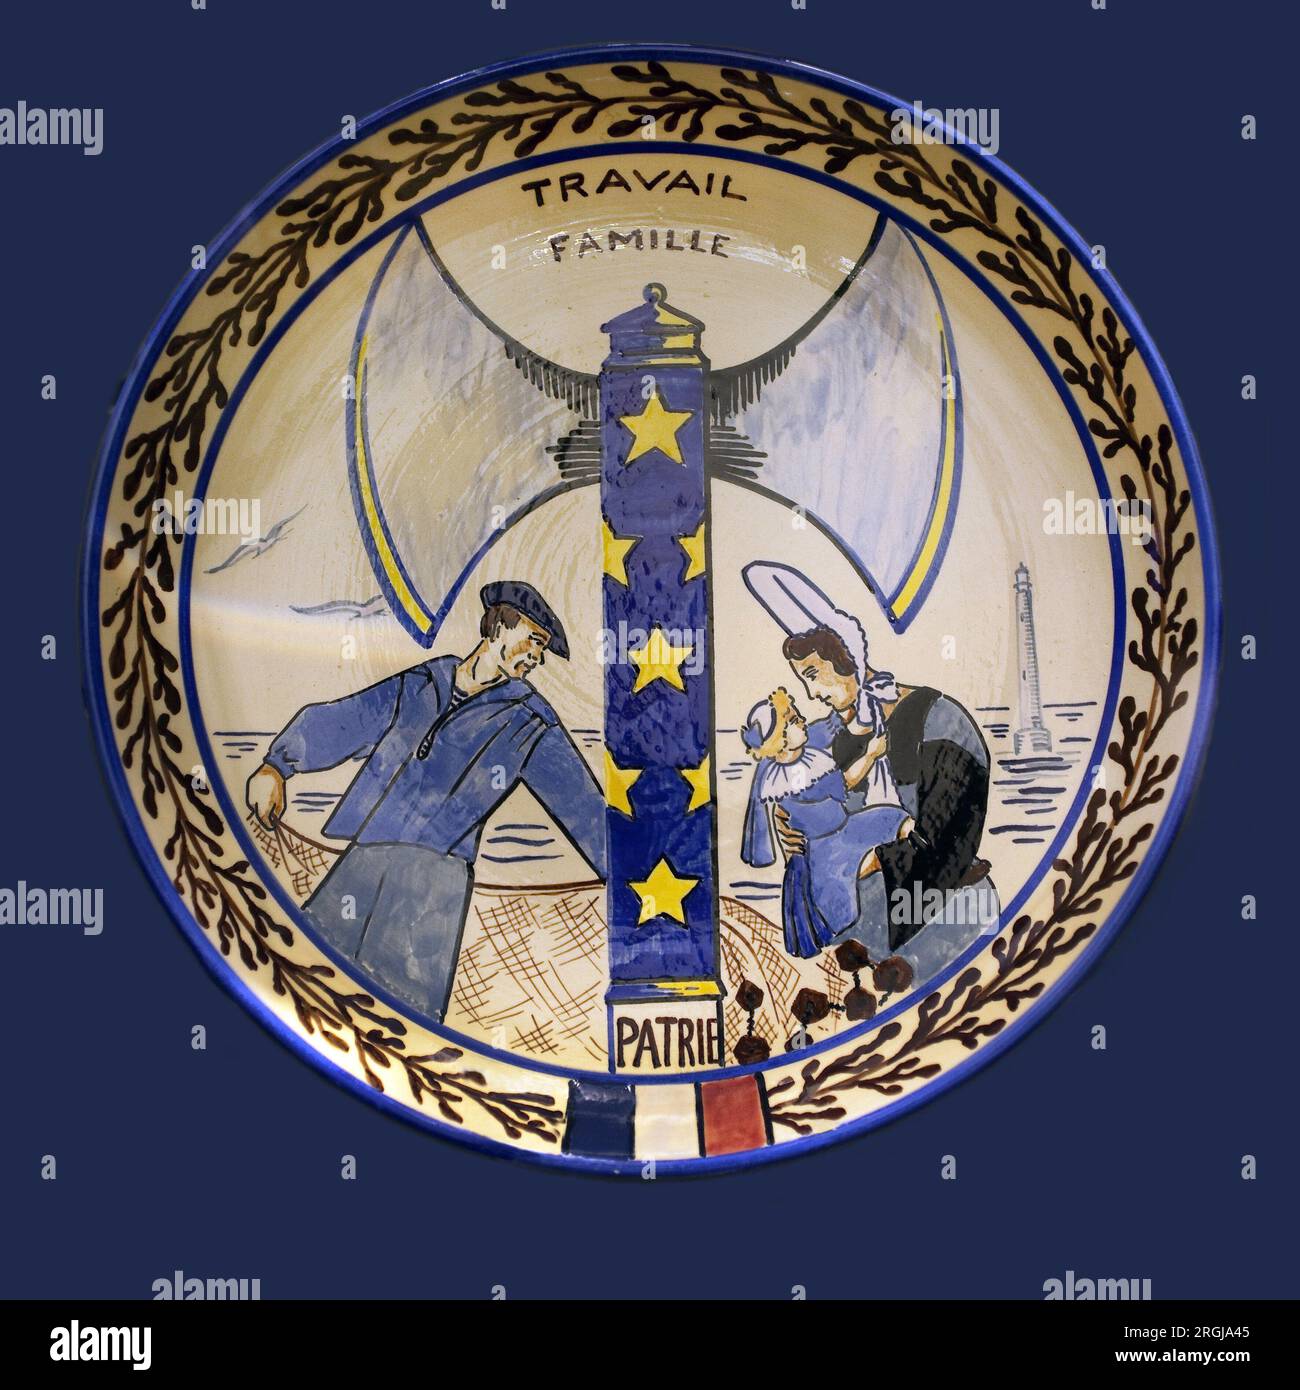 'Travail, famille, patrie', plat de propagande vichiste. Faiencerie polychrome, faiencerie HB, 1941-1944. Musée breton de Quimper. Banque D'Images